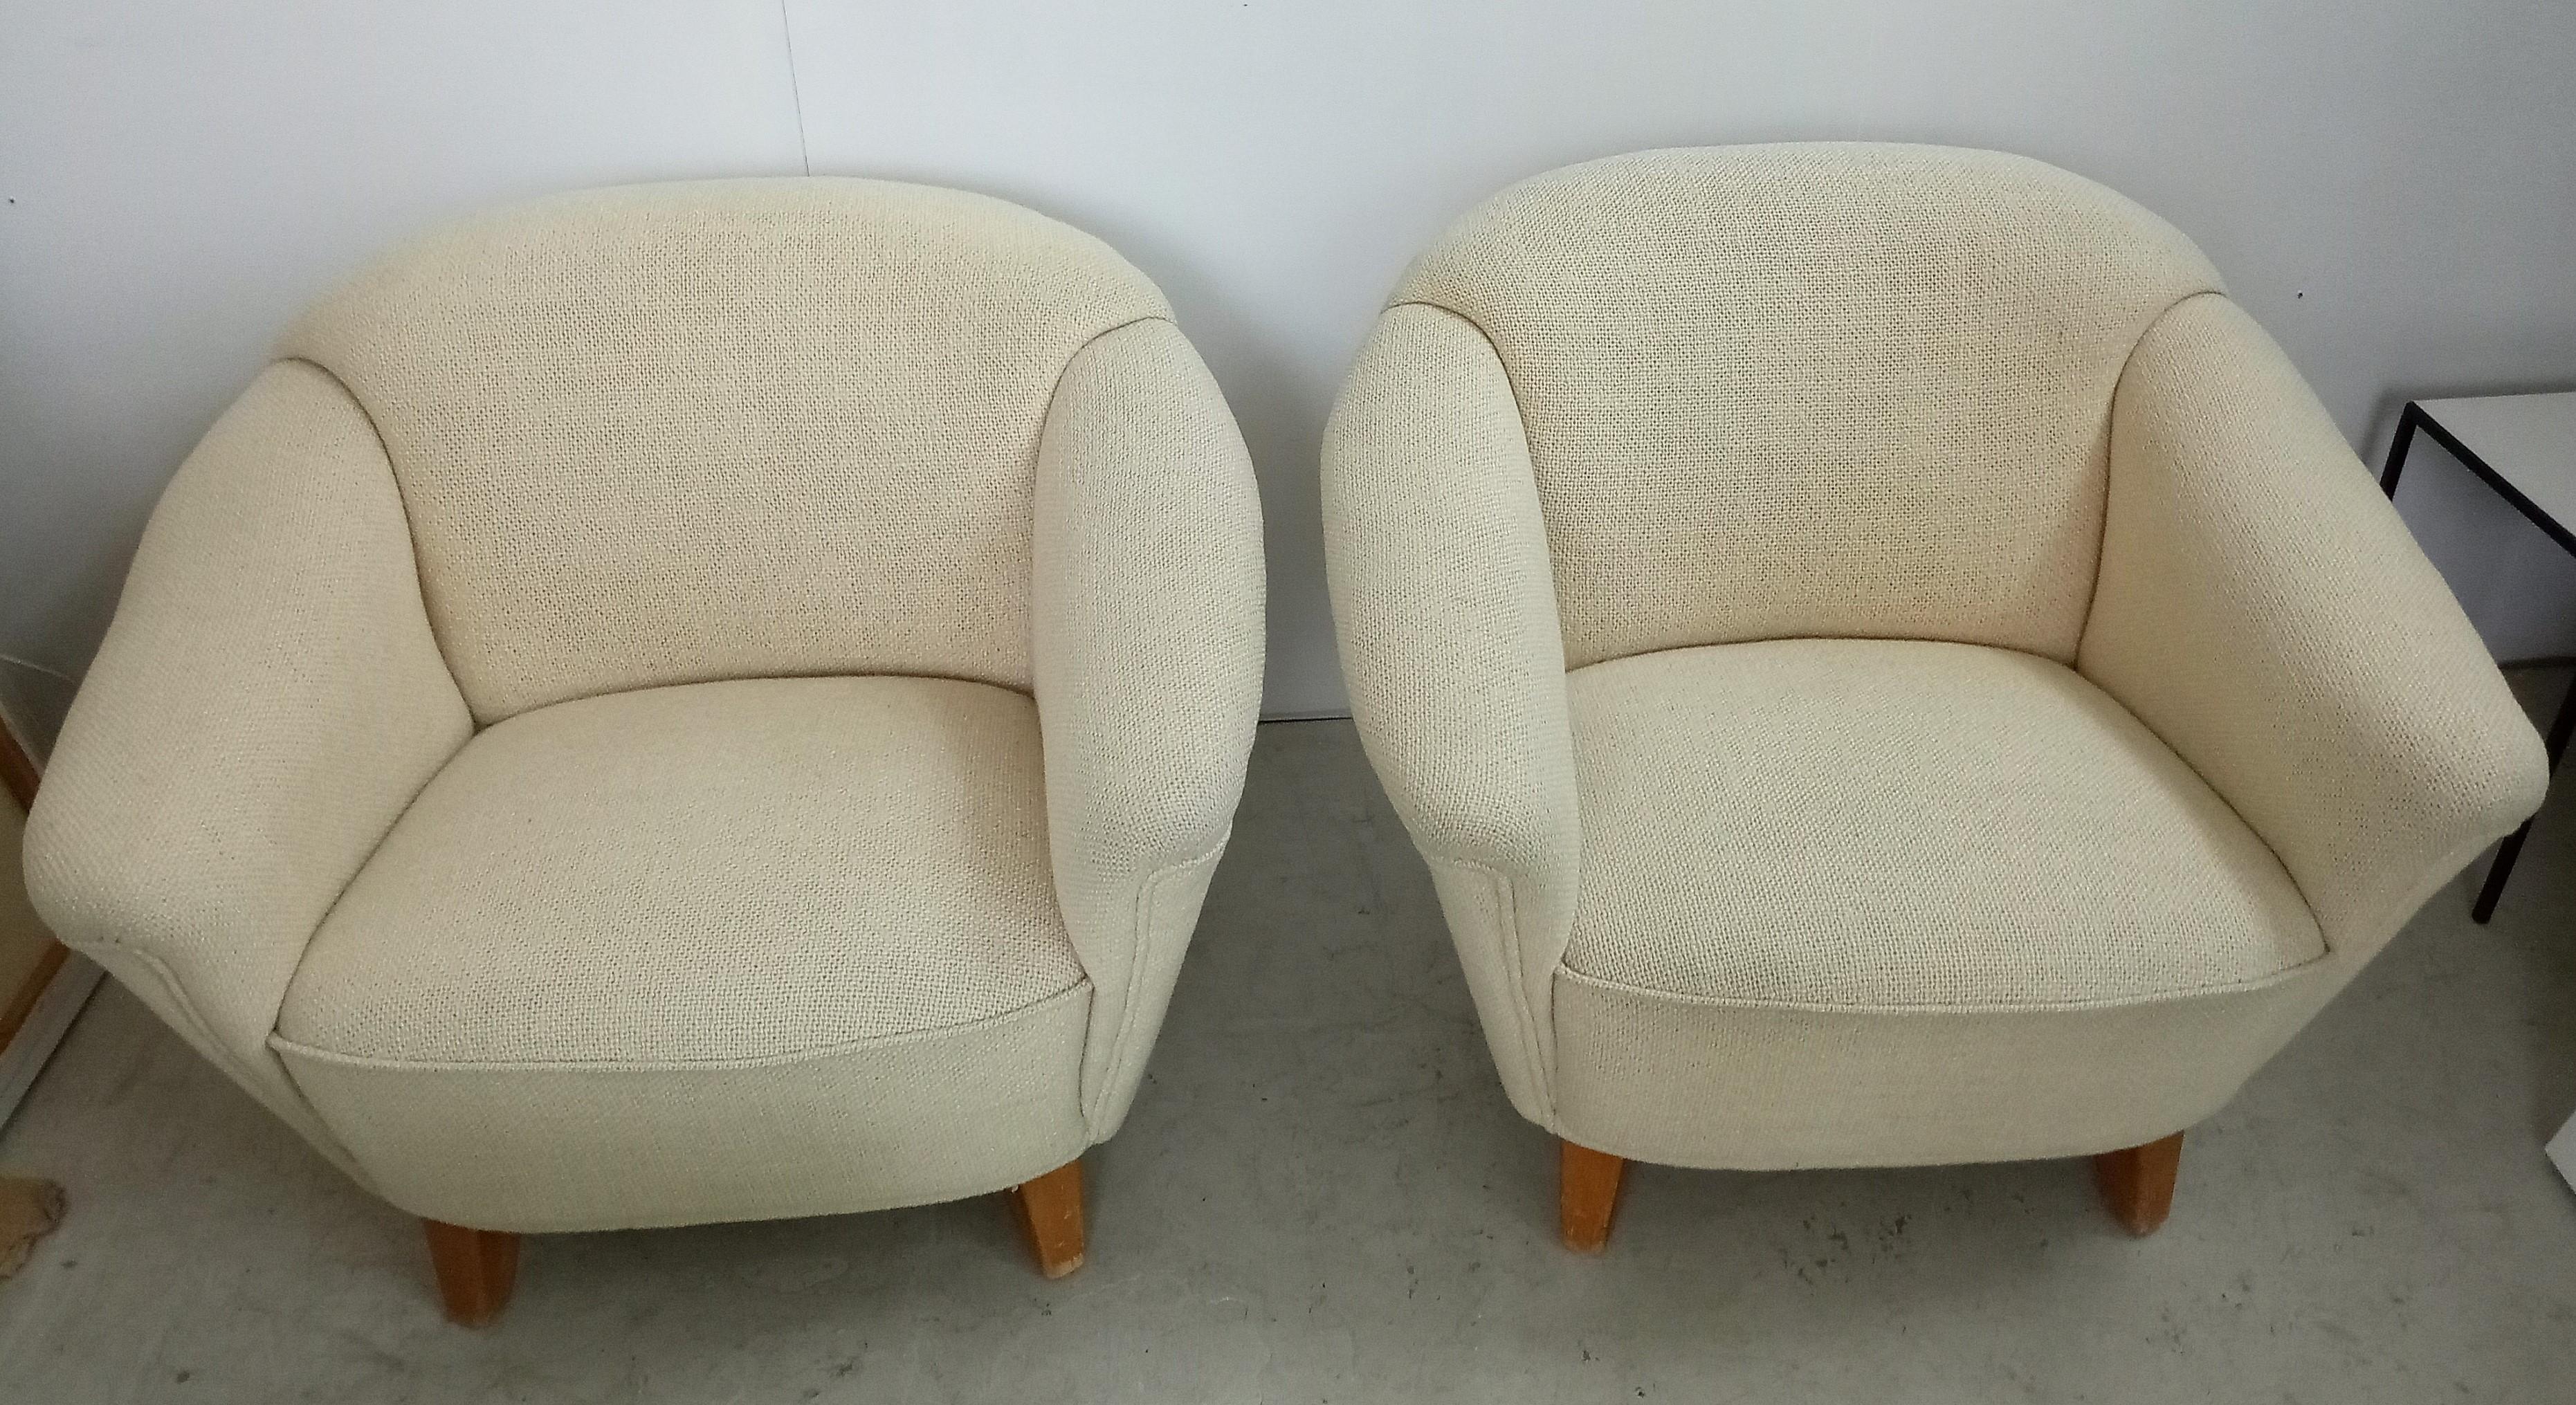 Seltenes Paar Loungesessel von dem berühmten Designer und Firmeninhaber Wilhelm Knoll.
gepolstert mit der originalen 100% Schafwolle 
sehr komfortabel